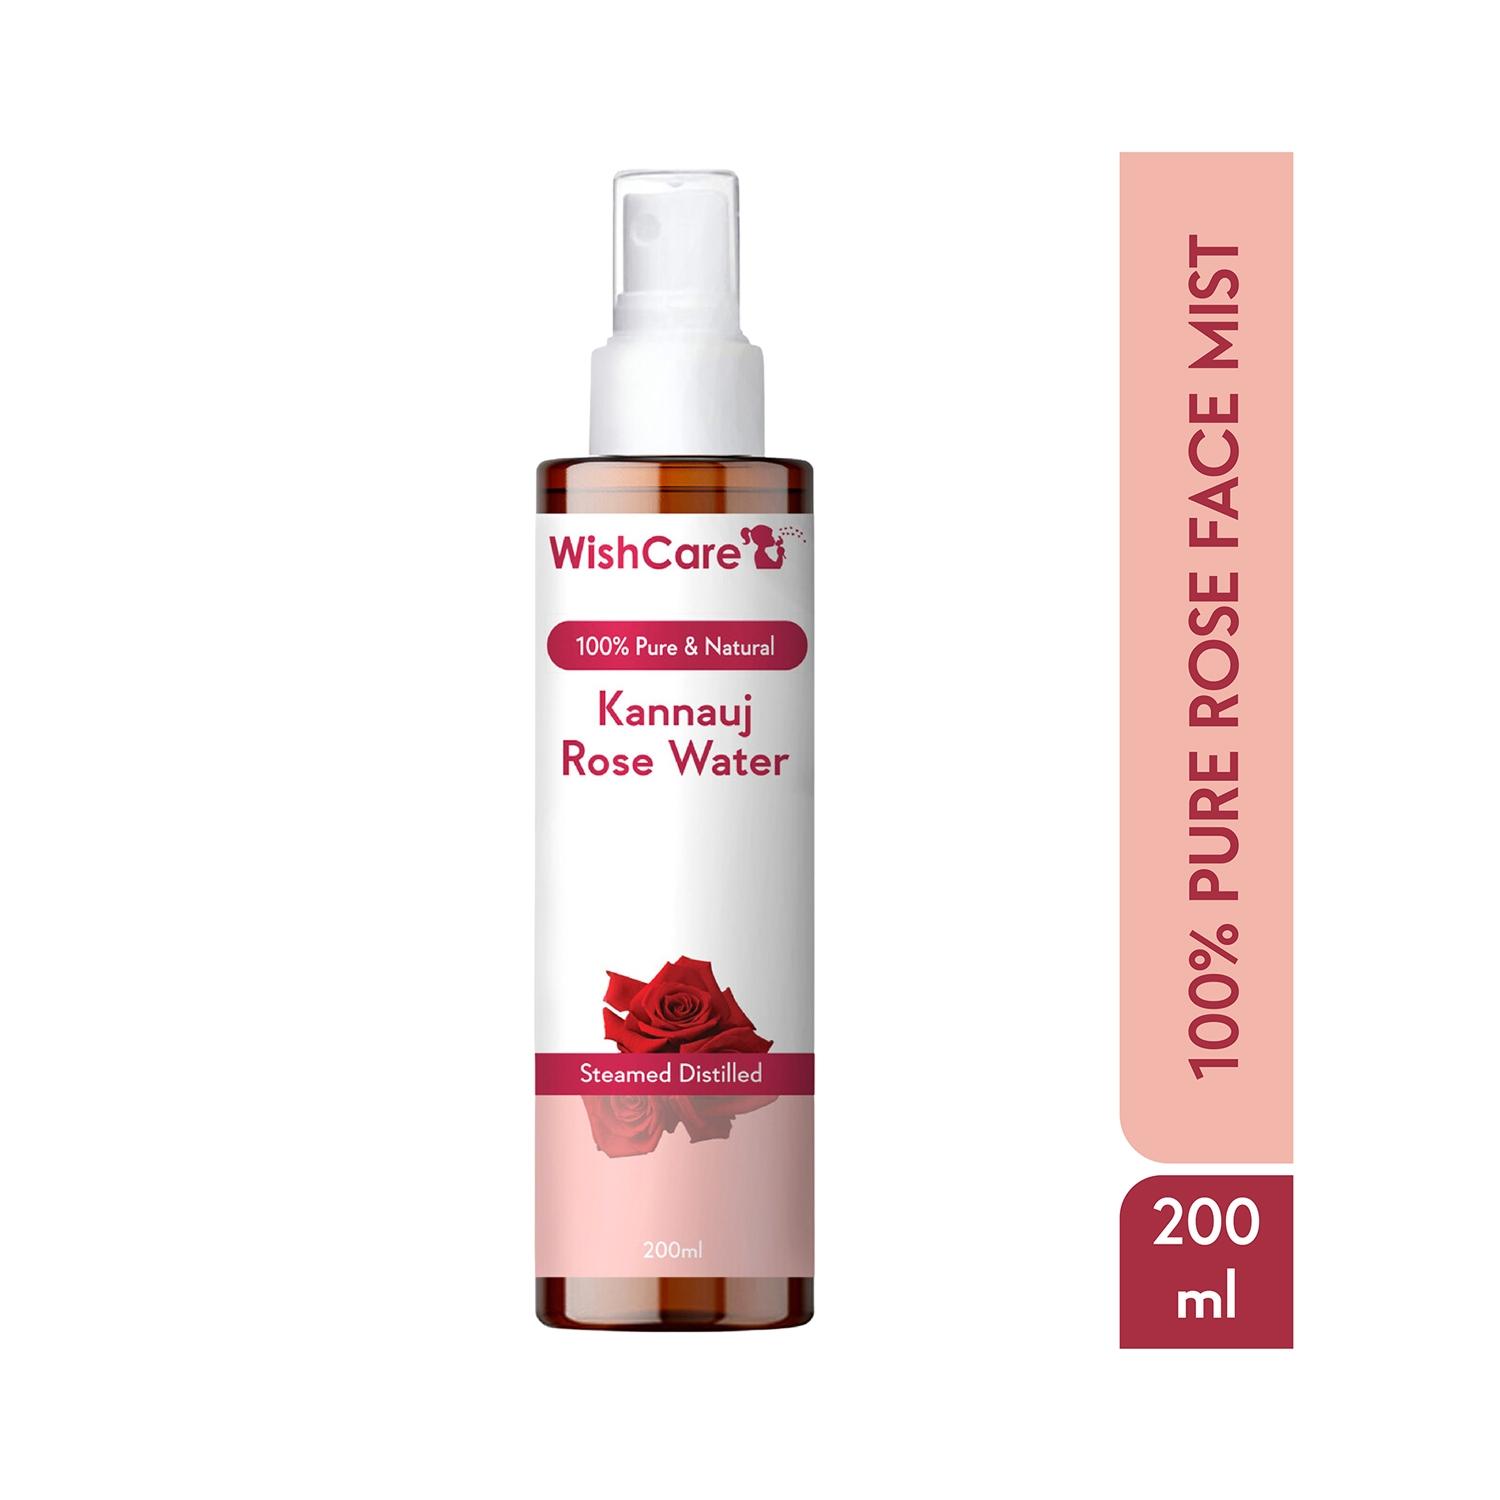 Wishcare Pure & Natural Kannauj Rose Water Toner (200ml)